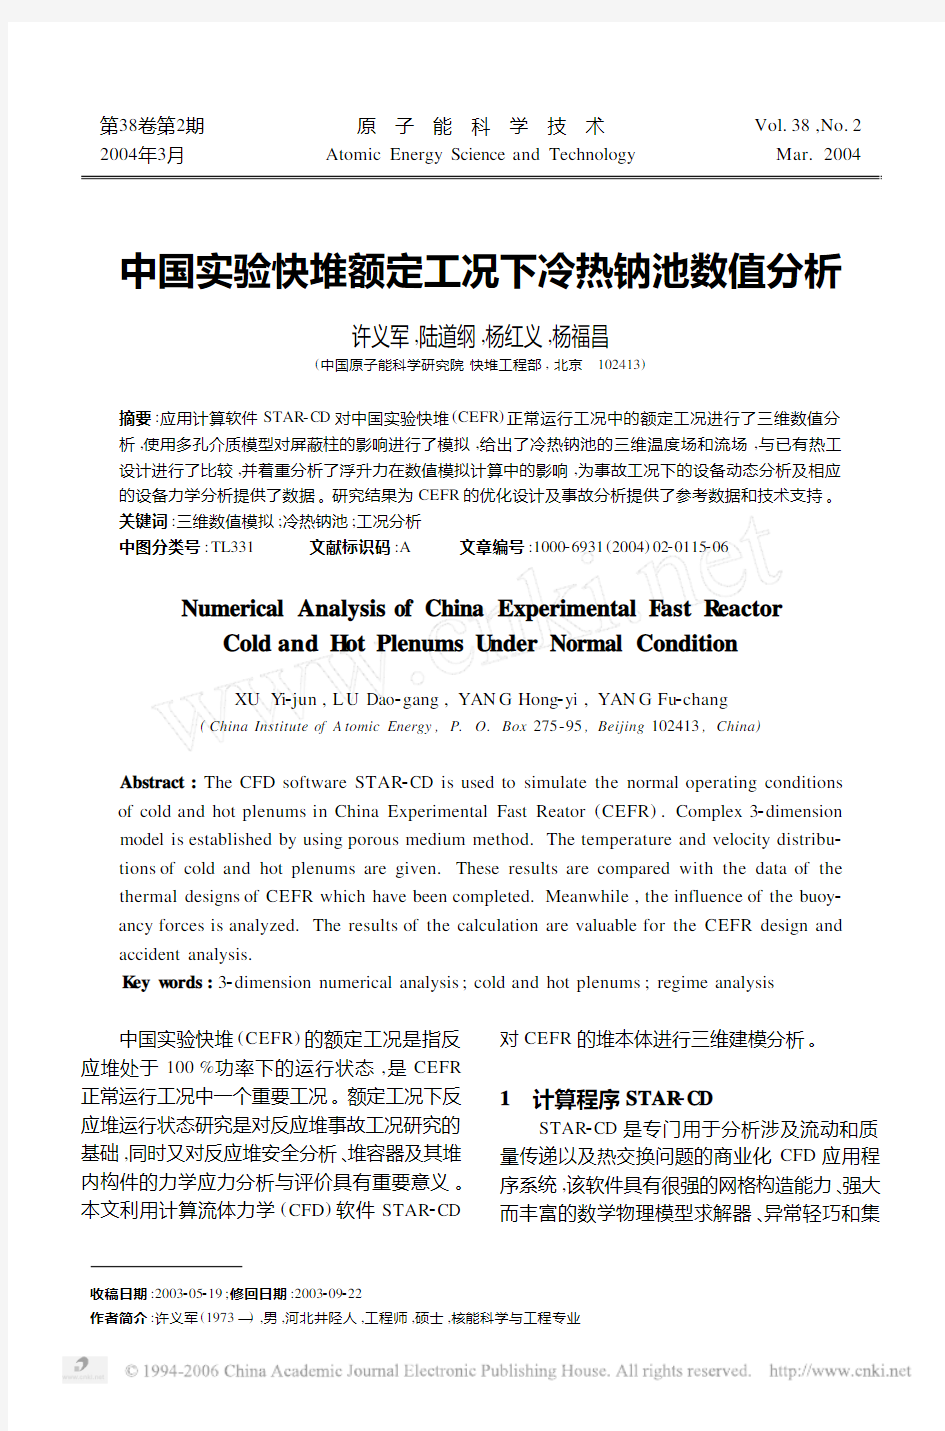 中国实验快堆额定工况下冷热钠池数值分析